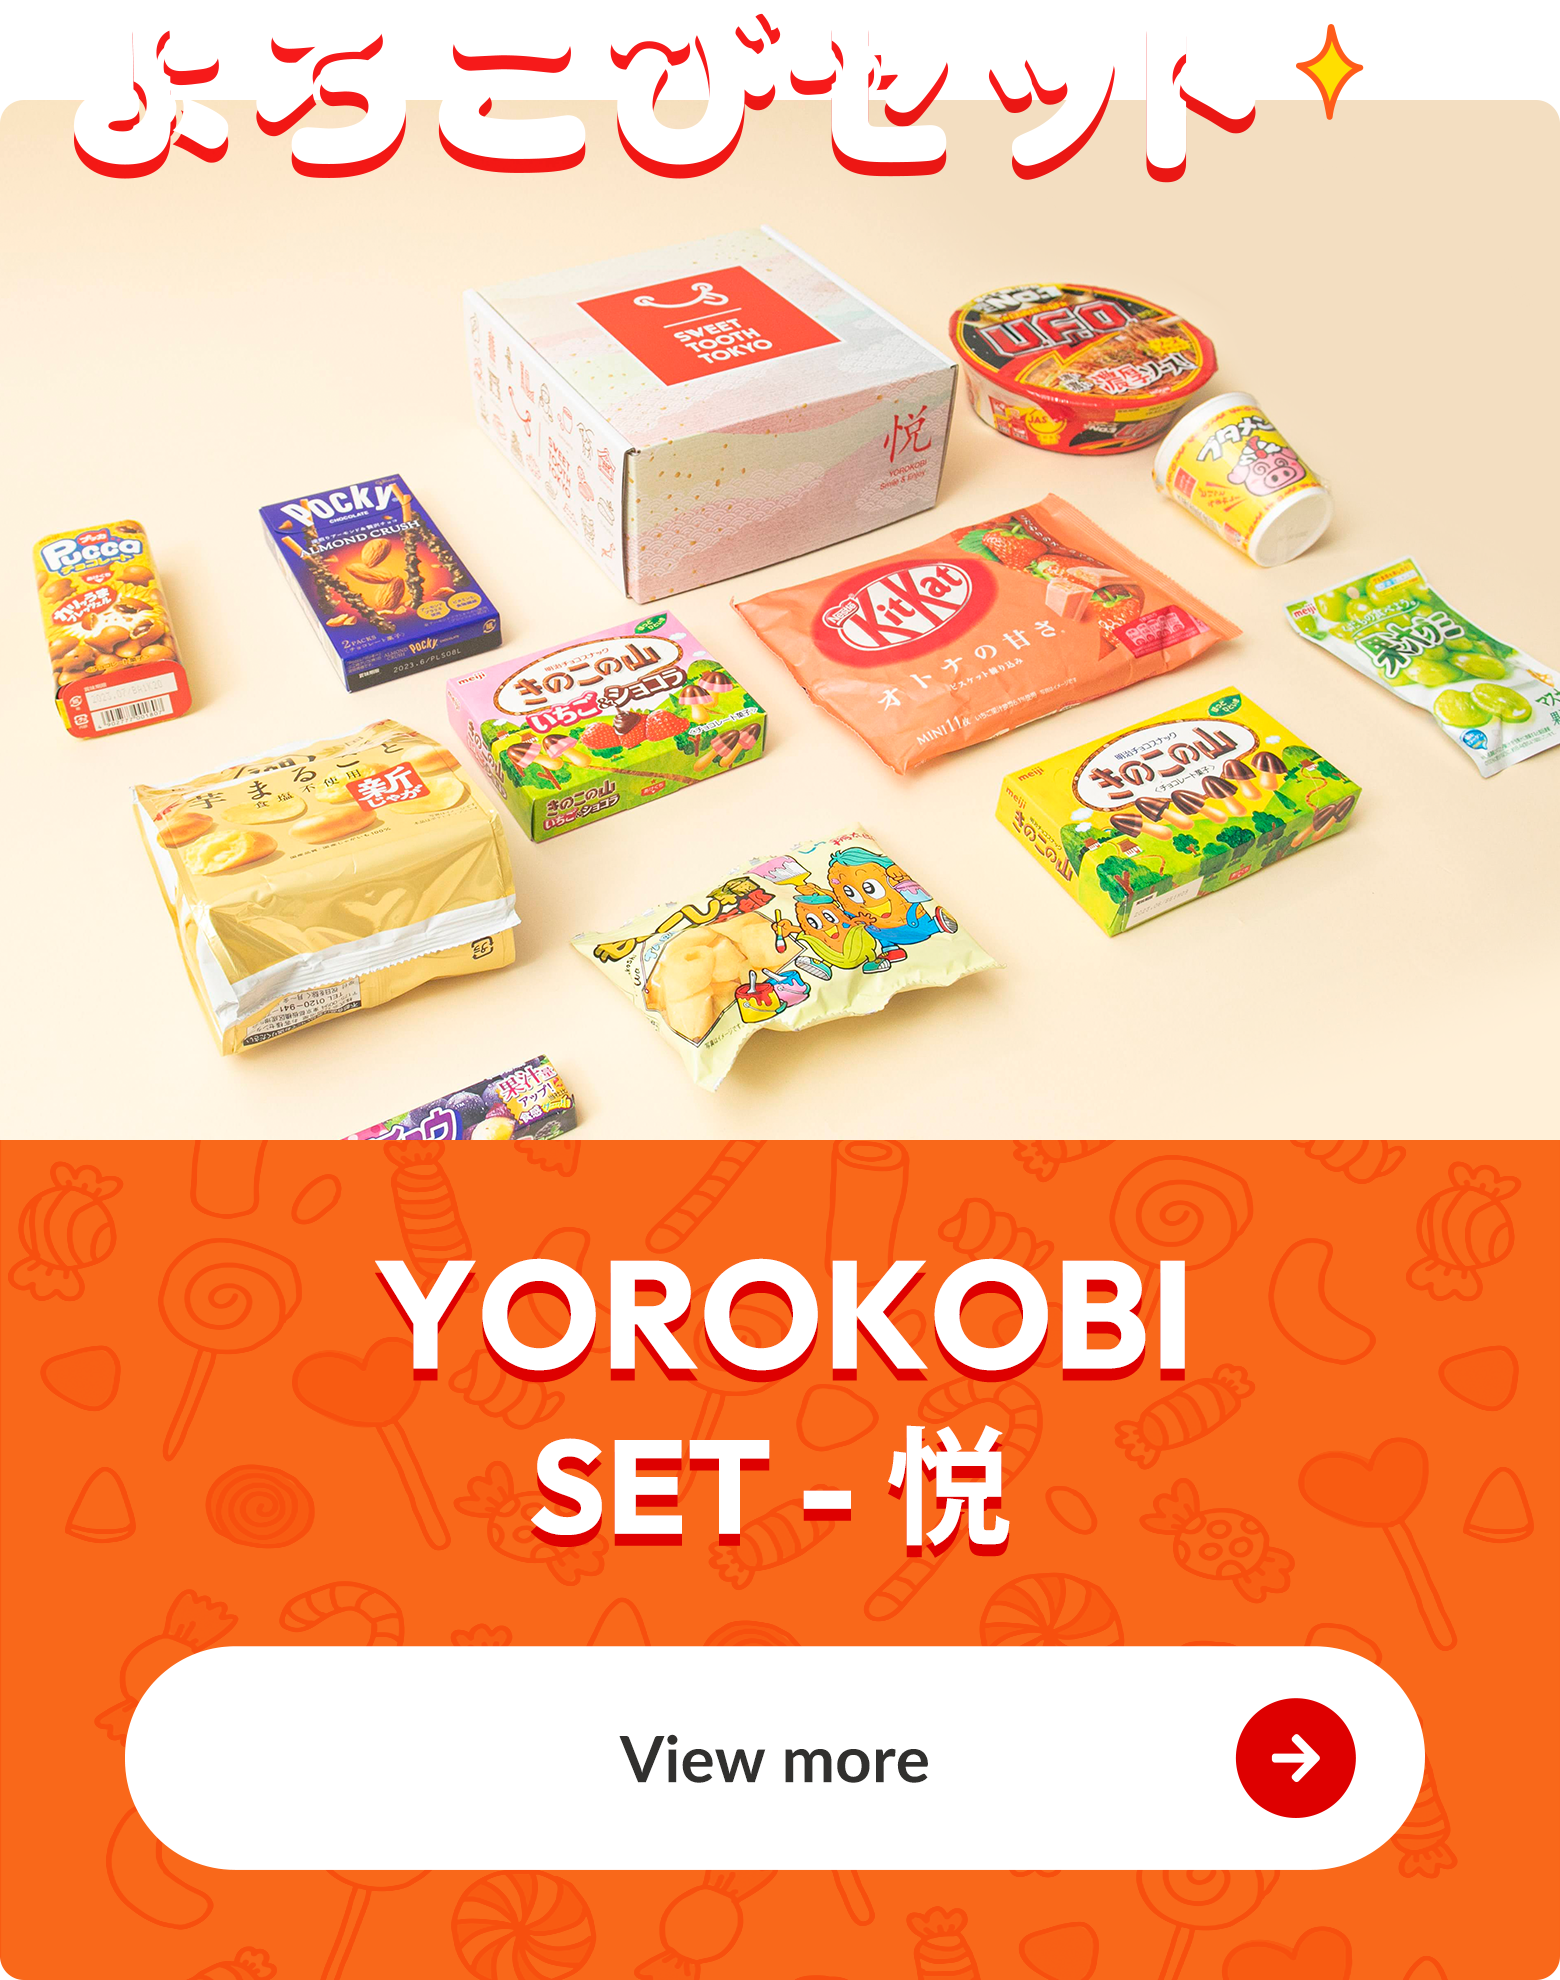 Yorokobi set